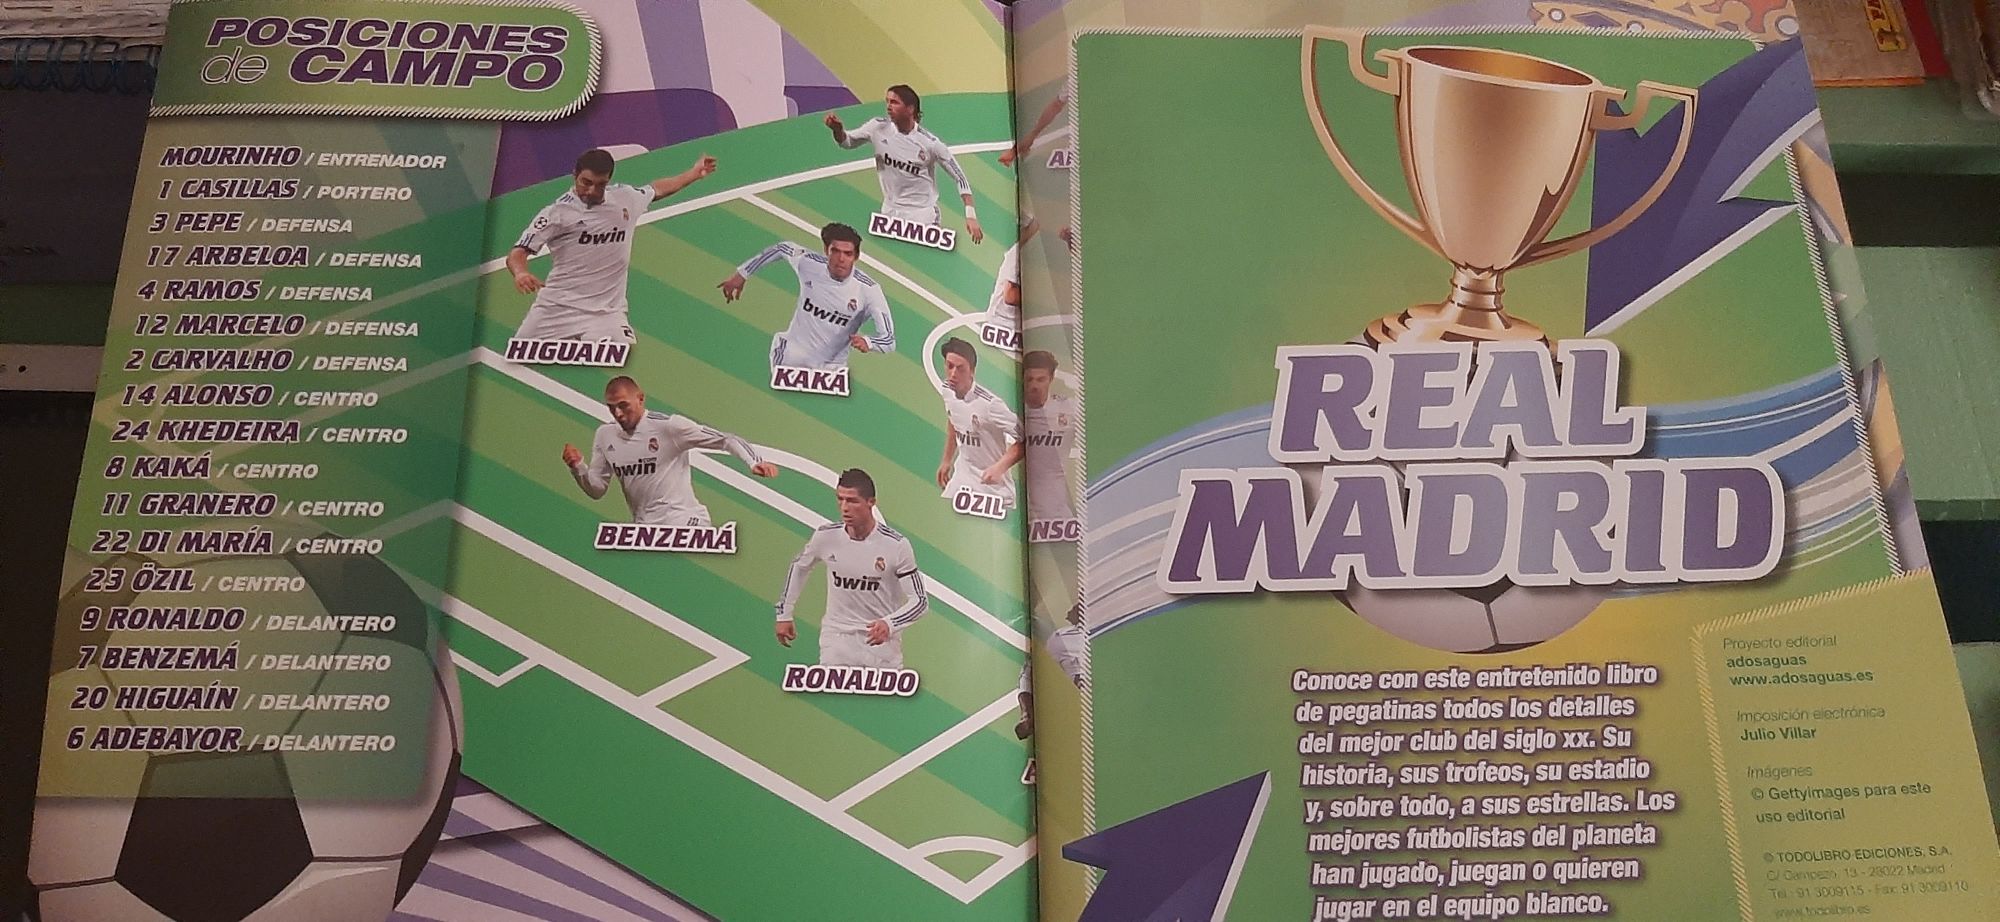 Caderneta completa cromos por colar Real Madrid/Ronaldo/José Mourinho